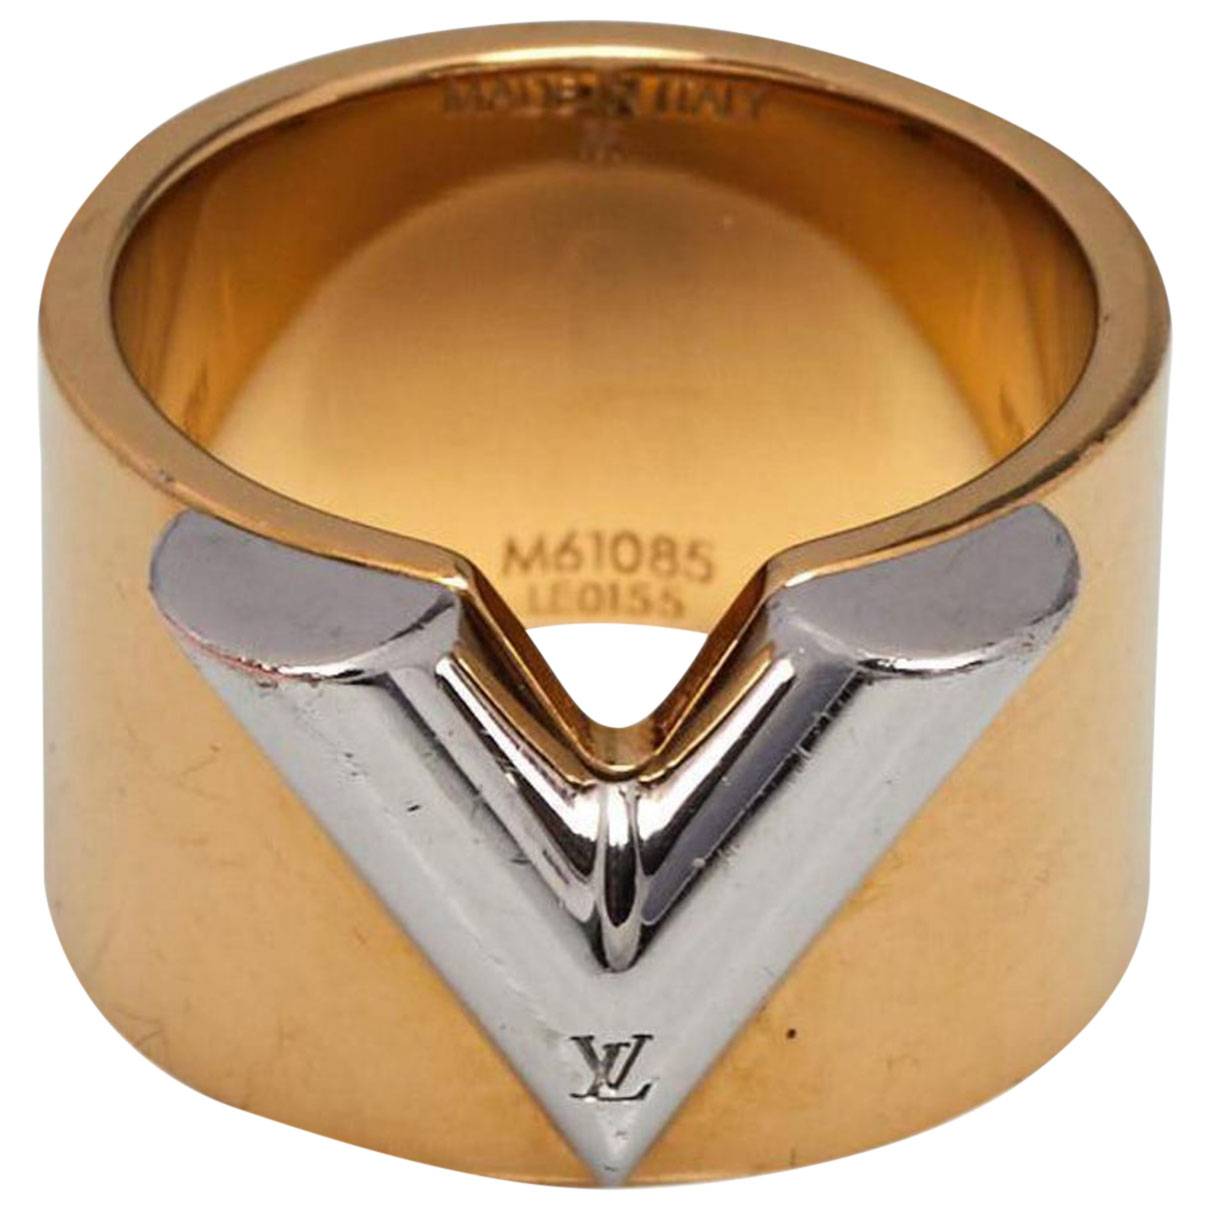 Louis Vuitton Nanogram Ring - Brass Band, Rings - LOU806536